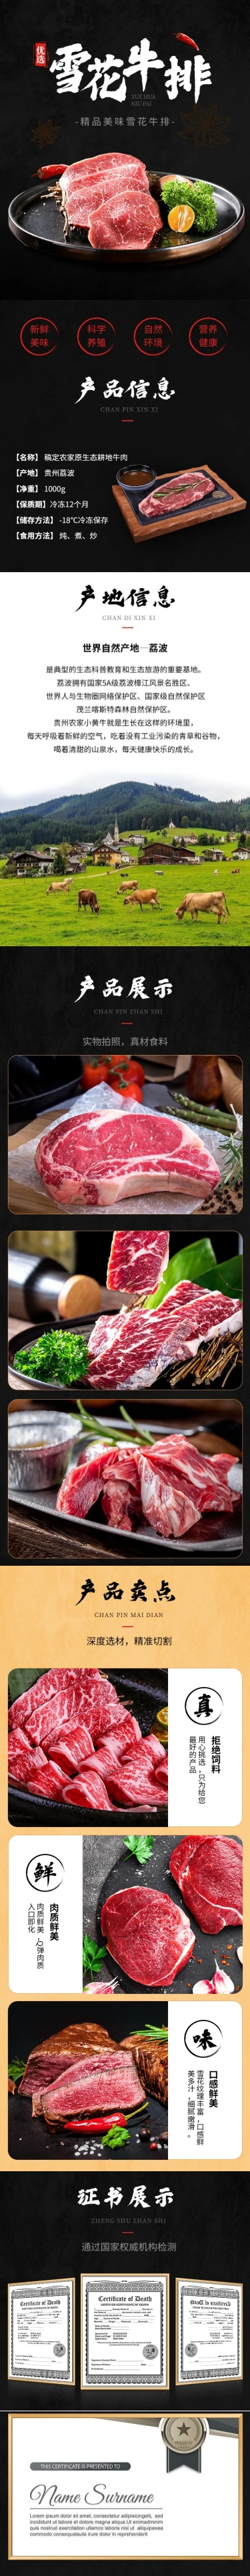 电商食品生鲜肉类牛排详情页